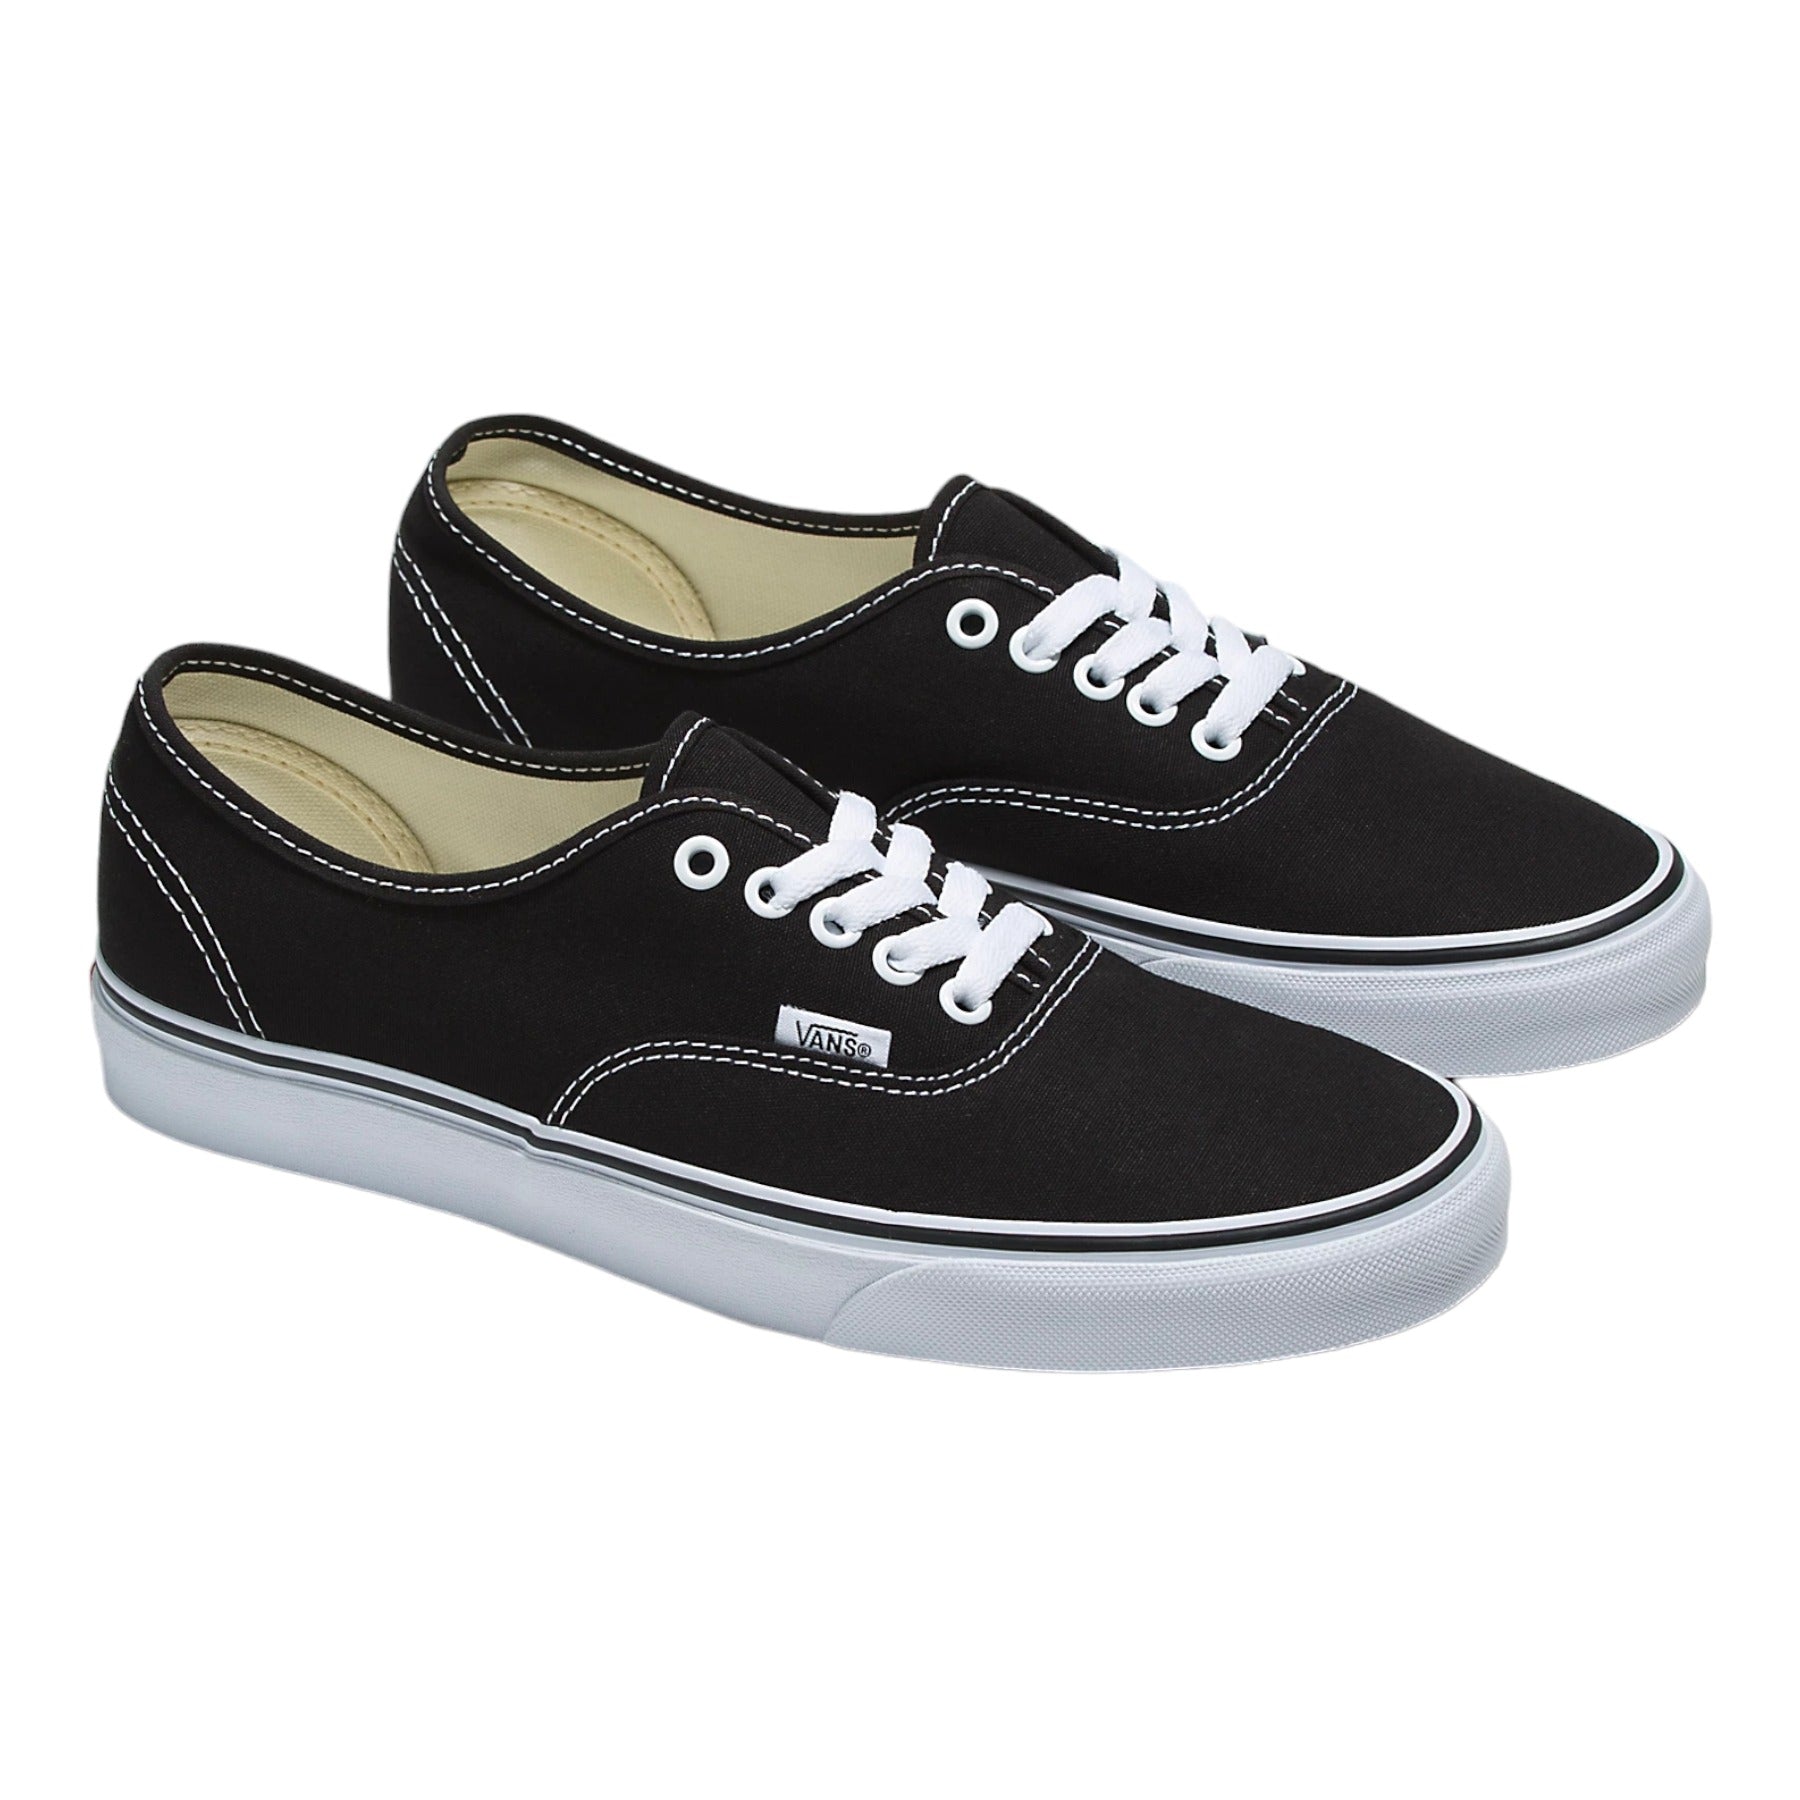 Vans Authentic Shoes - Black/White